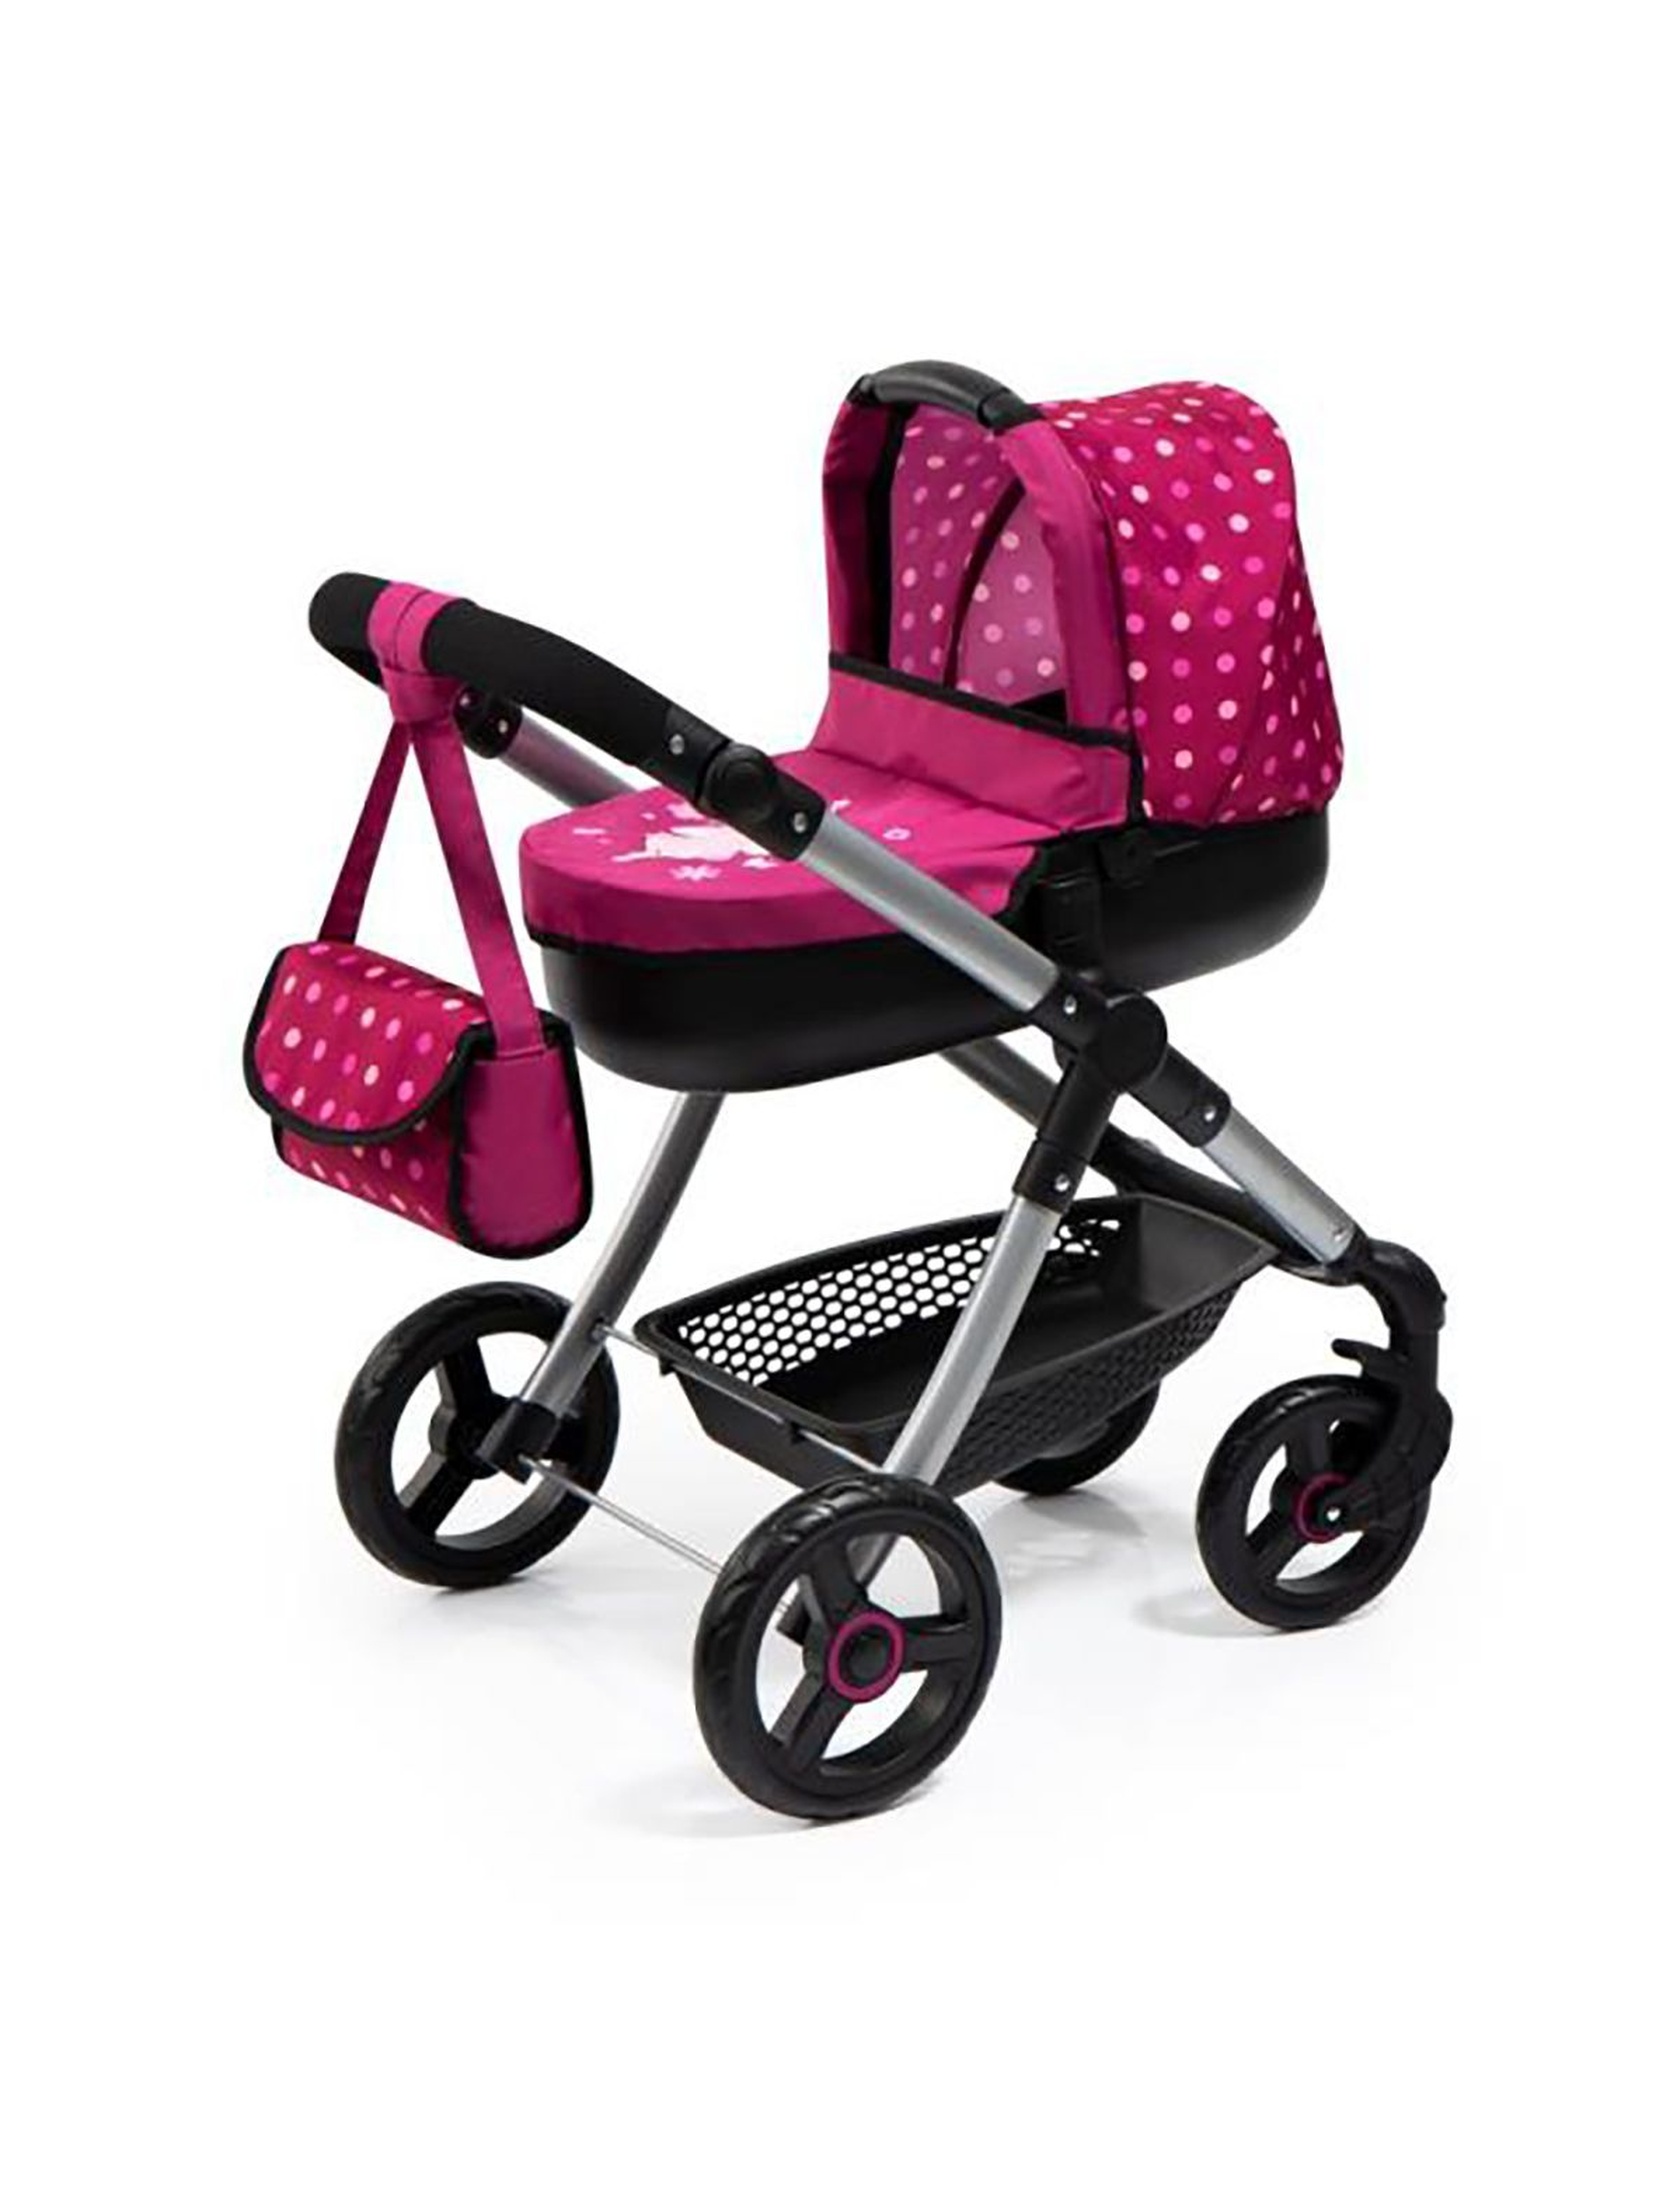 Wózek dla lalek Style w kropeczki - różowy